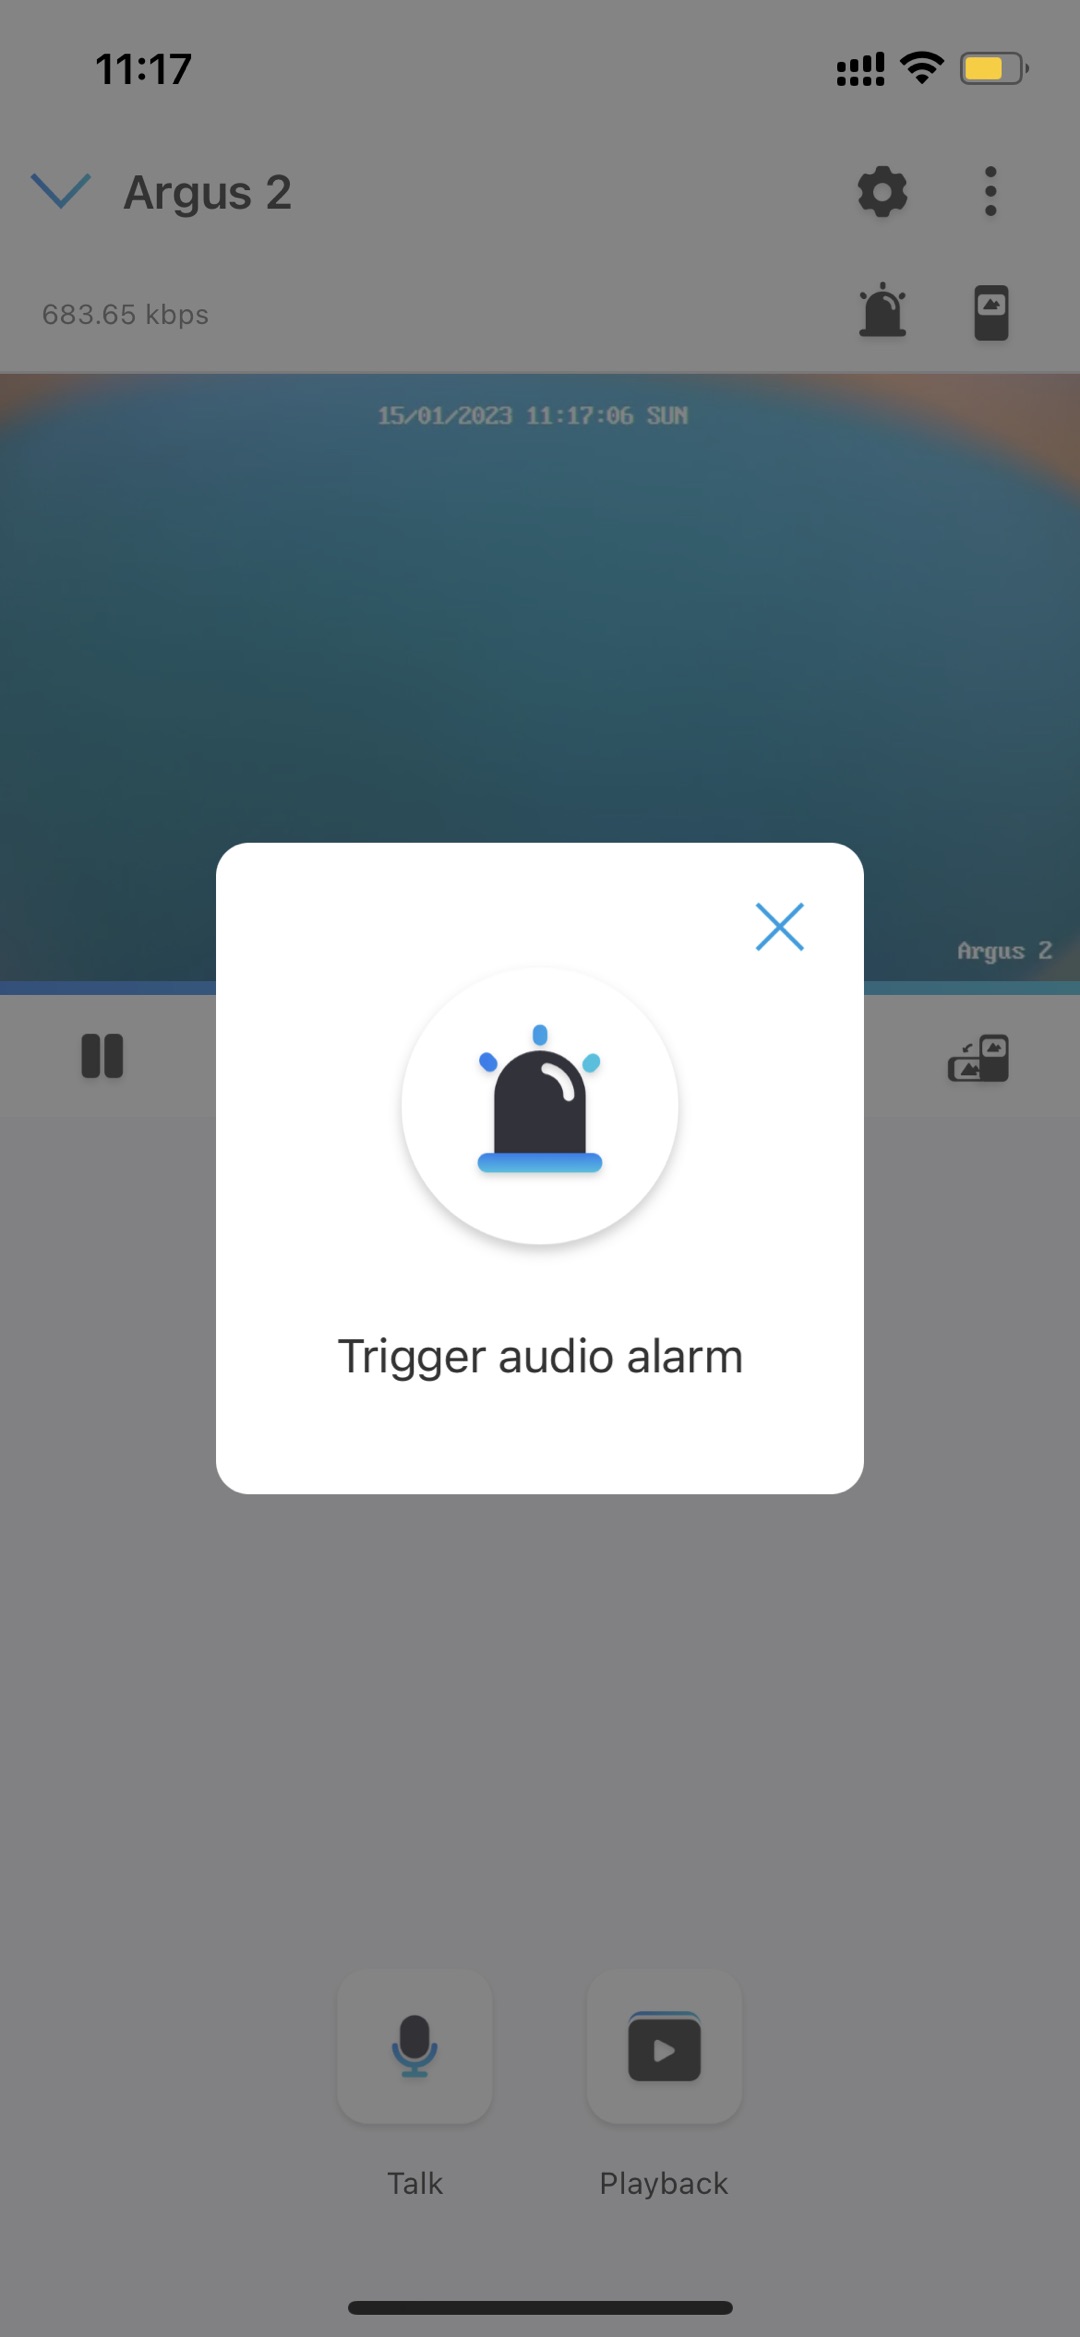 tap_trigger_audio_alarm.jpg